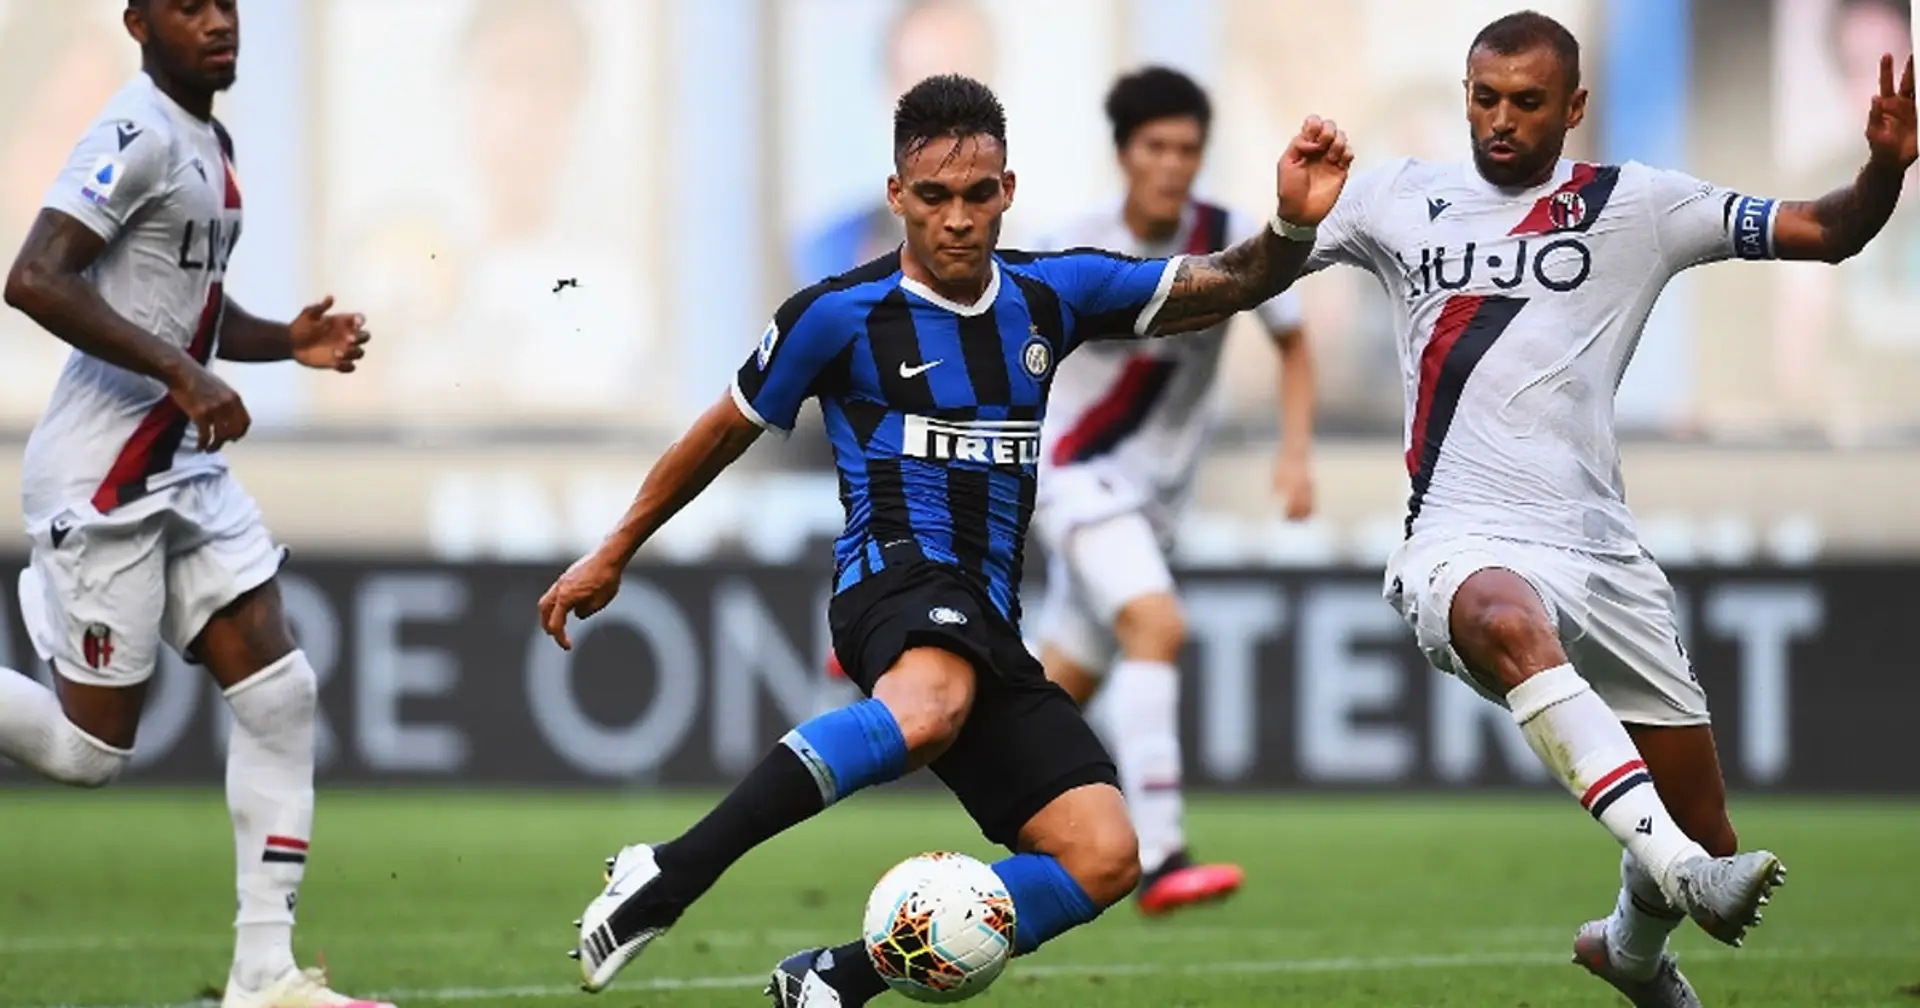 L'Inter cade in maniera inaspettata in casa contro il Bologna: il match riassunto in 6 punti chiave